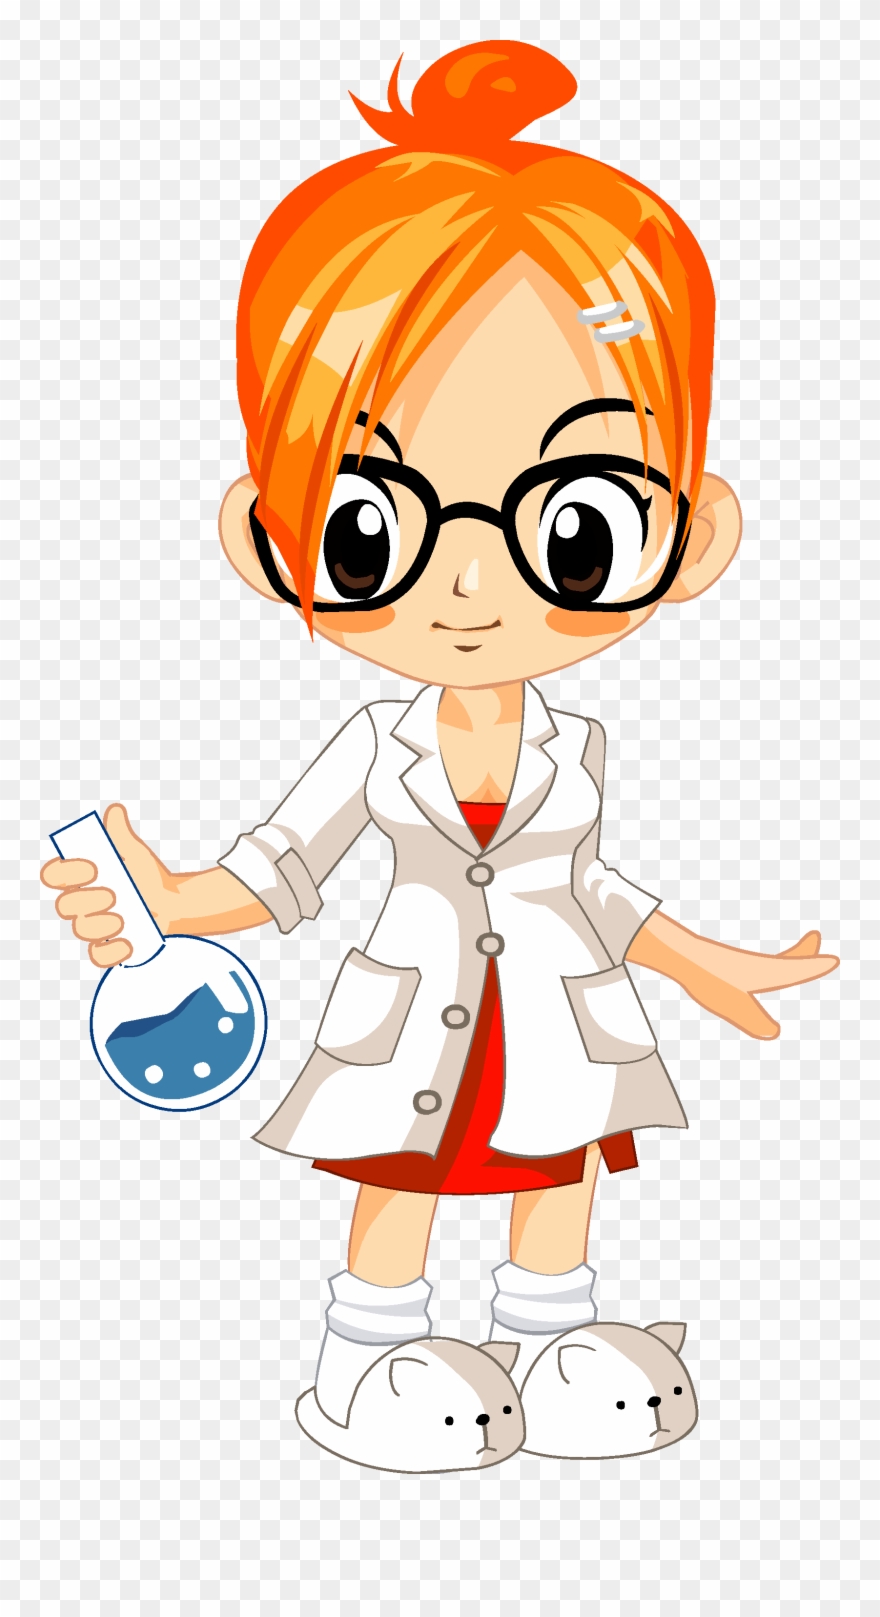 scientist clipart nerd